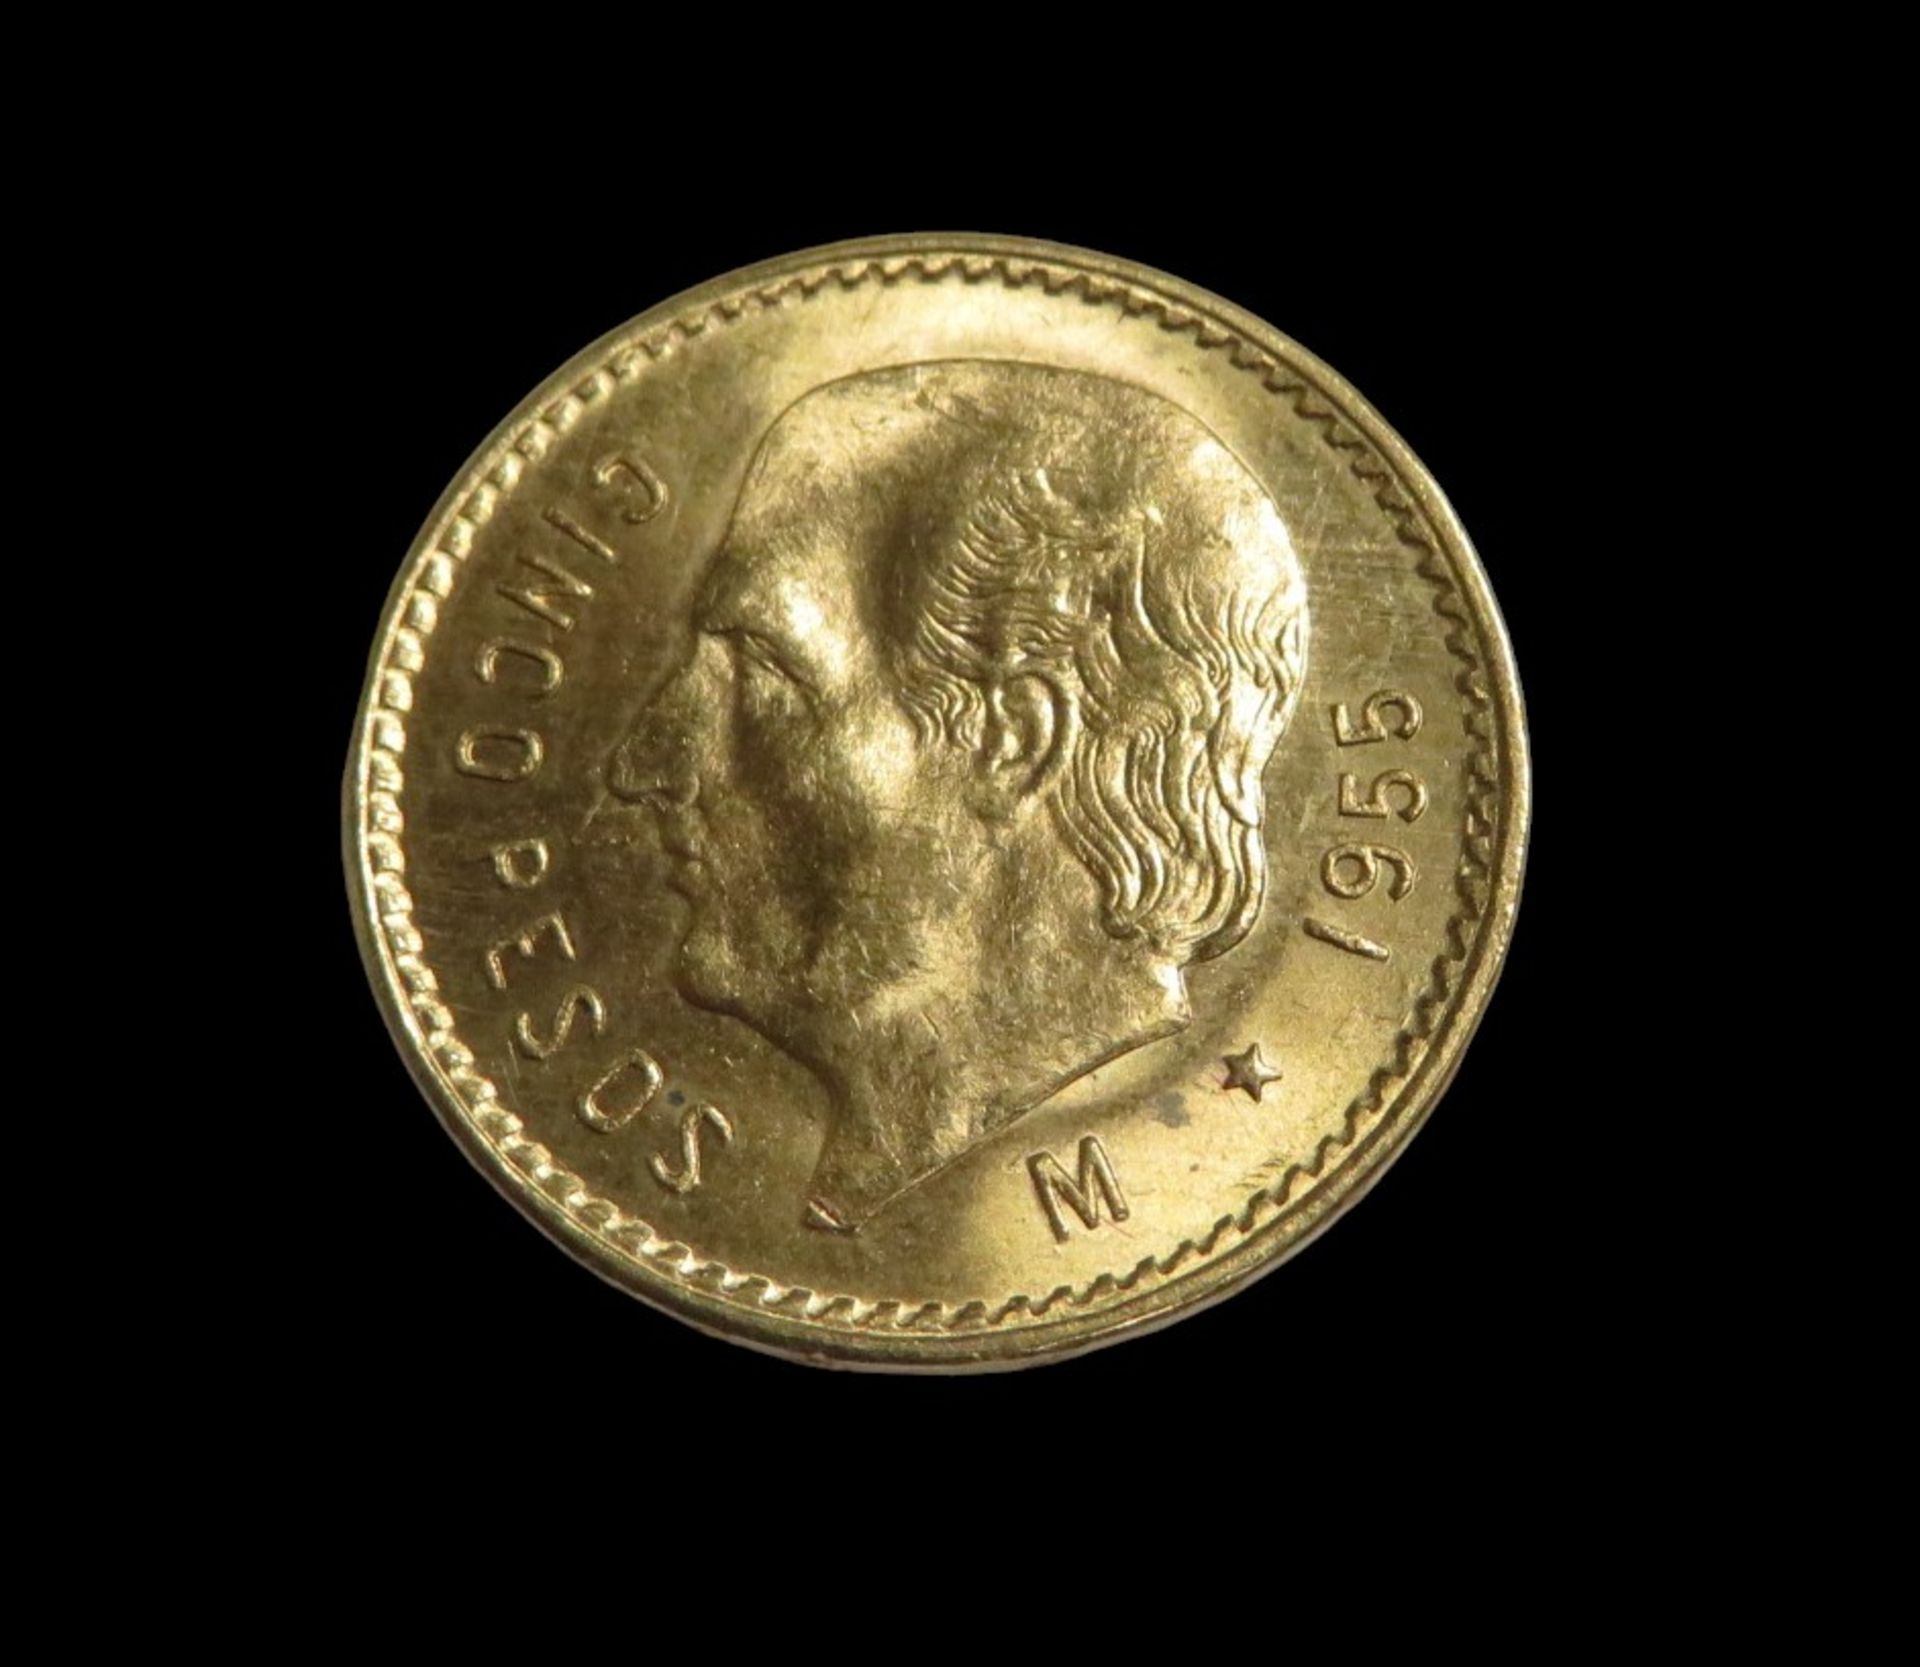 Goldmünze, Mexiko, 5 Pesos, 1955, Gold 900/000, 4,17 g, d 1,9 cm.